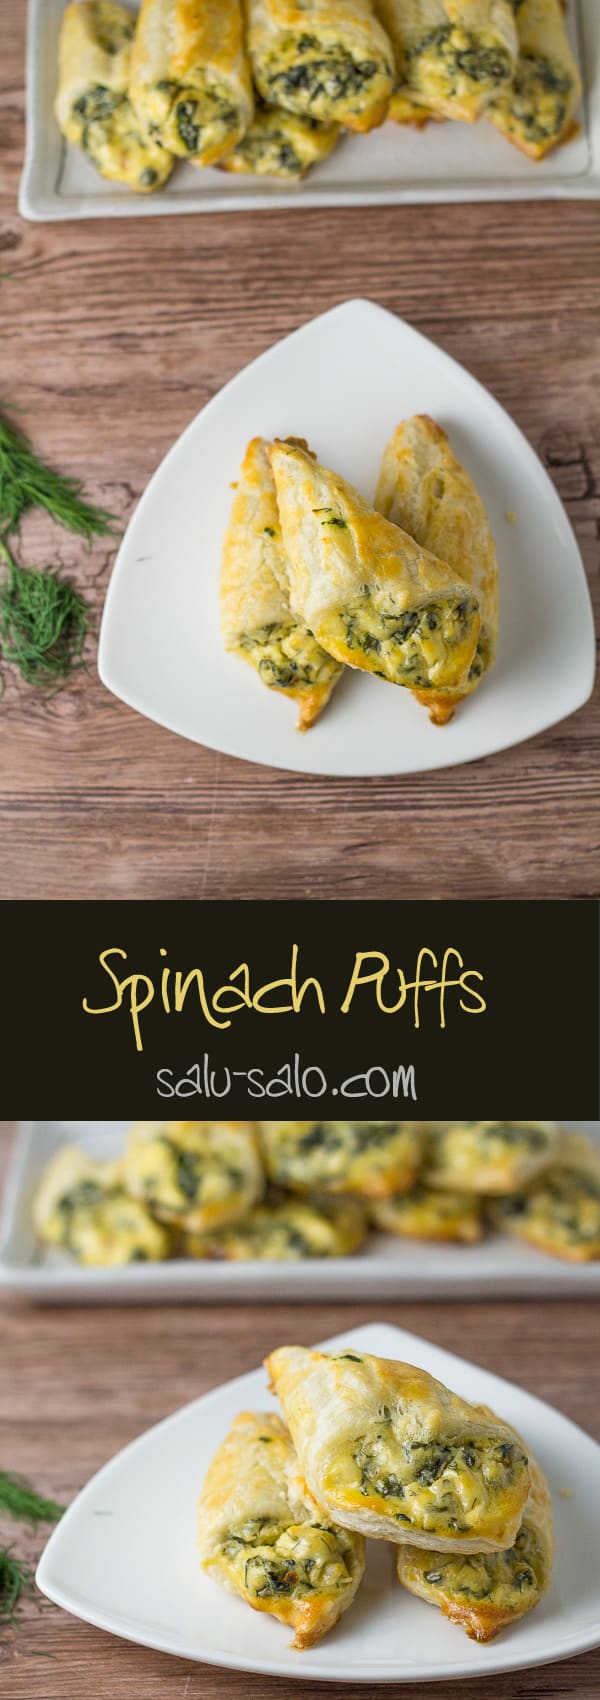 Spinach Puffs